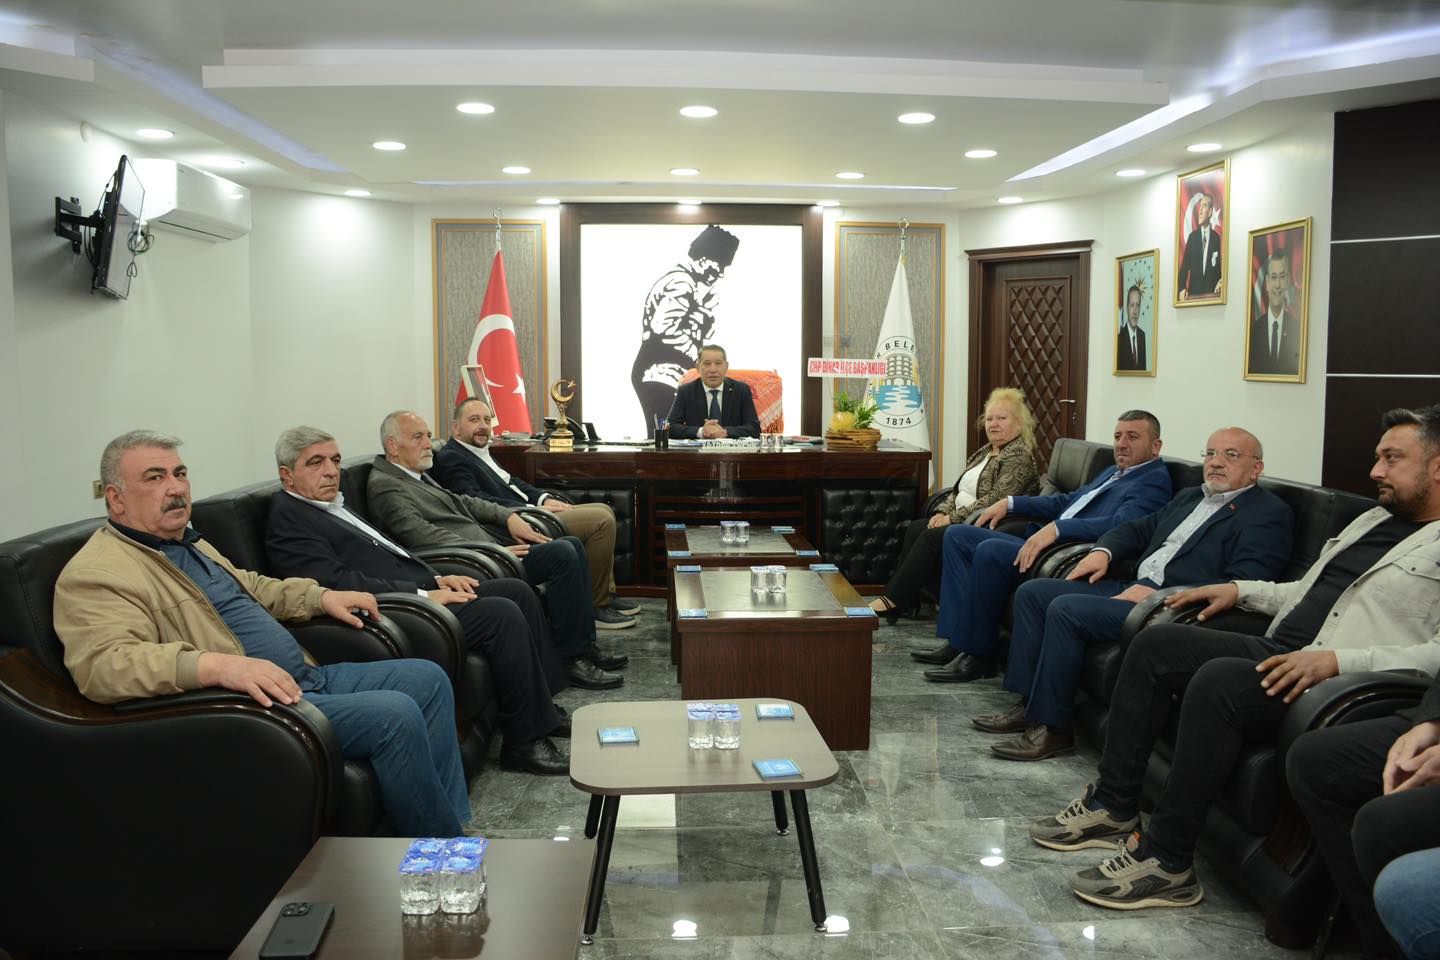 CHP İlçe Başkanı ve Yönetimi Belediye Başkanını Ziyaret Etti, İşbirliği ve Kalkınma Konuları Ele Alındı